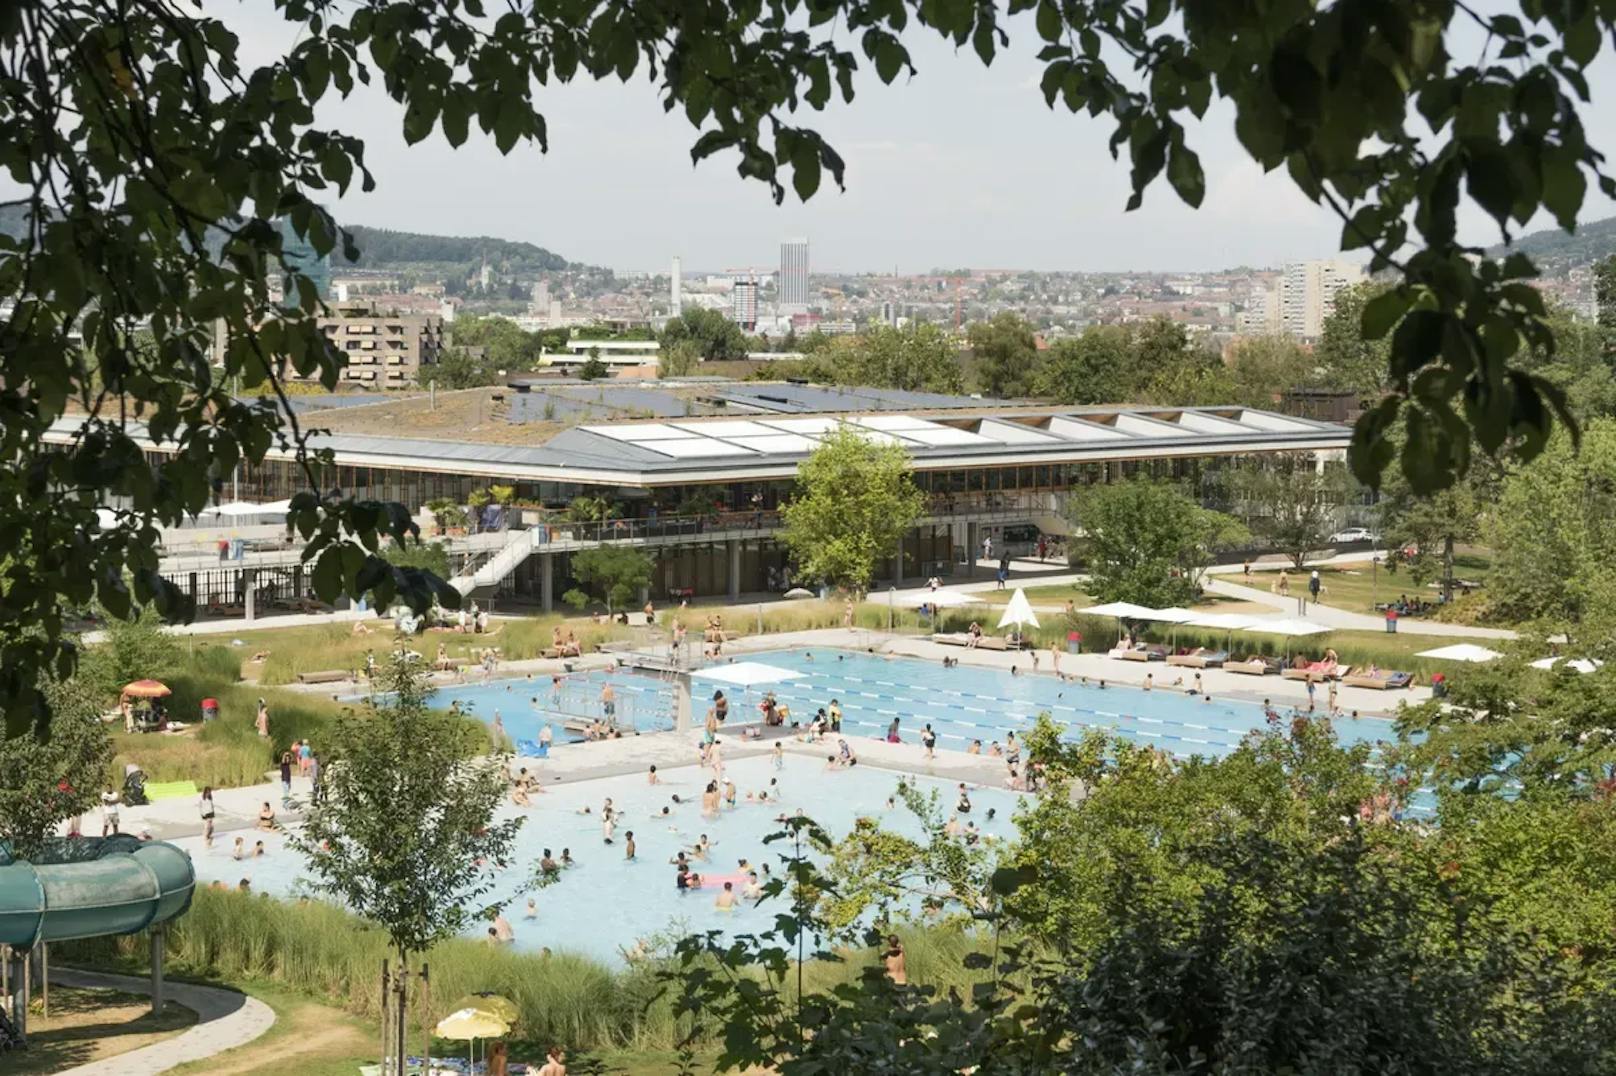 Das Zürcher Sportamt will den Vorfall intern prüfen und aufarbeiten. "Sexuelle Handlungen in den Badeanlagen sind nicht erlaubt und werden auch nicht toleriert", sagt eine Sprecherin.